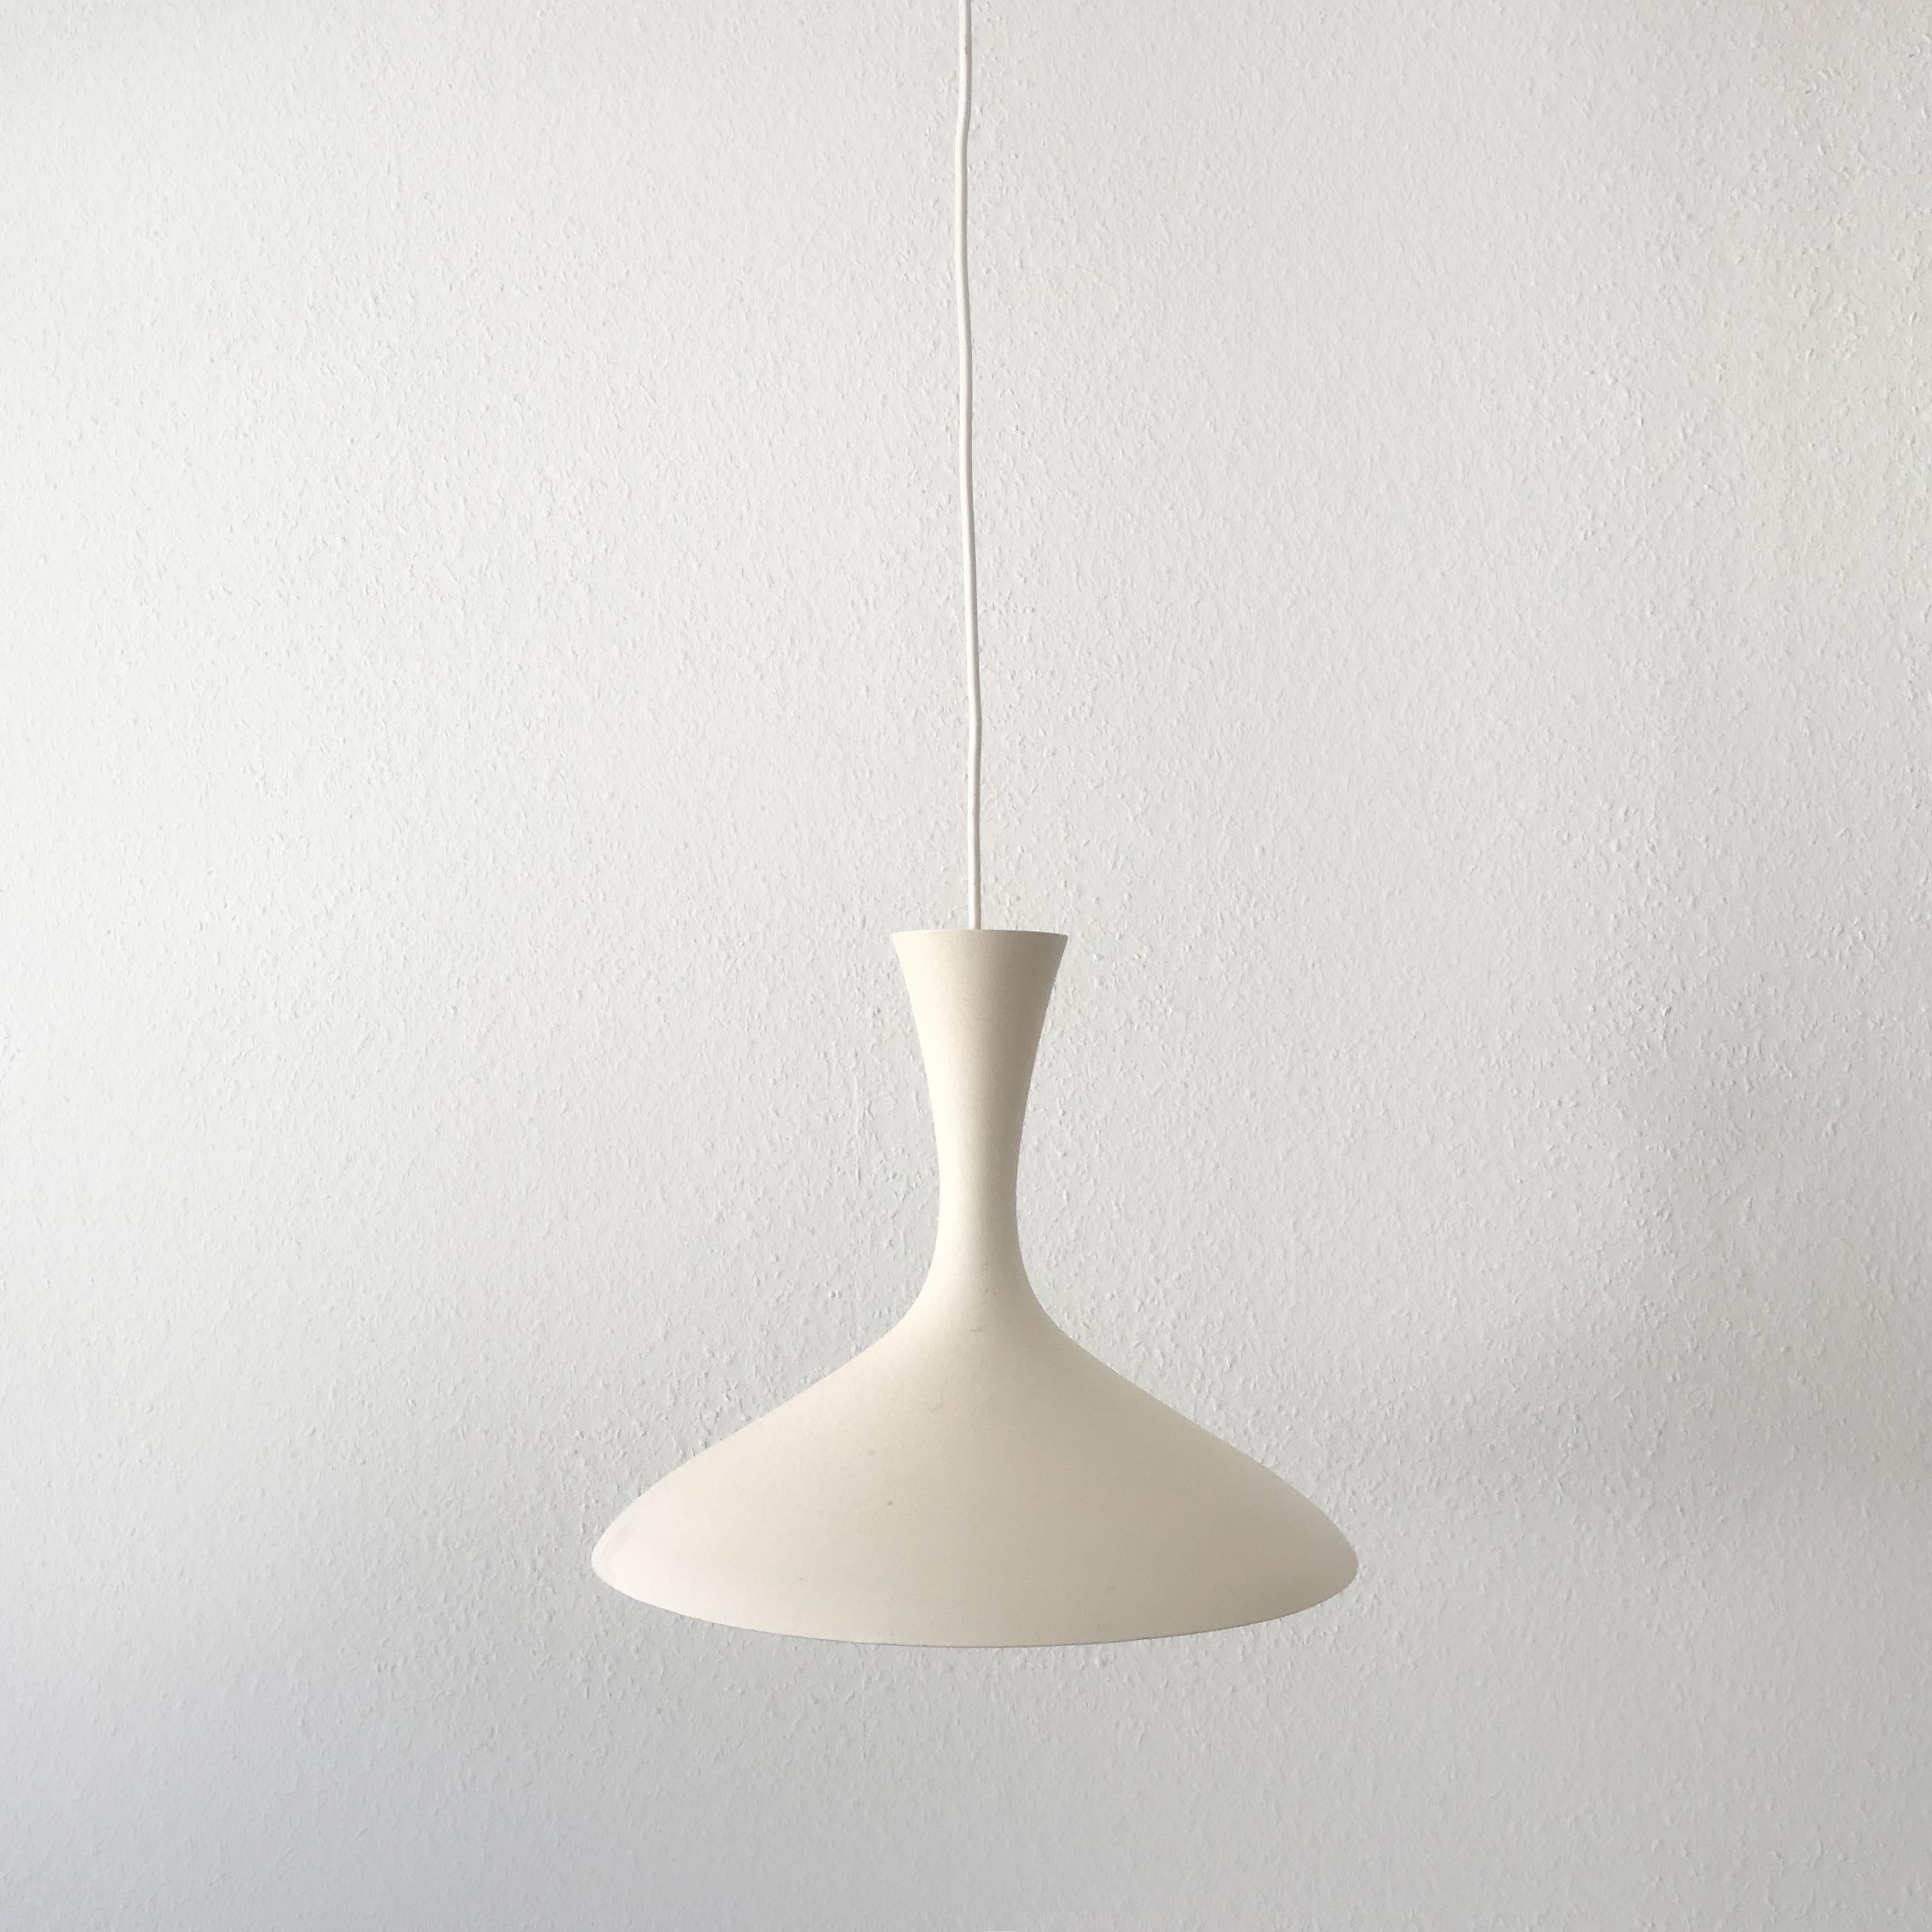 Aluminum Rare and Elegant Pendant Lamp by Louis Kalff for Gebrüder Cosack, 1950s, Germany